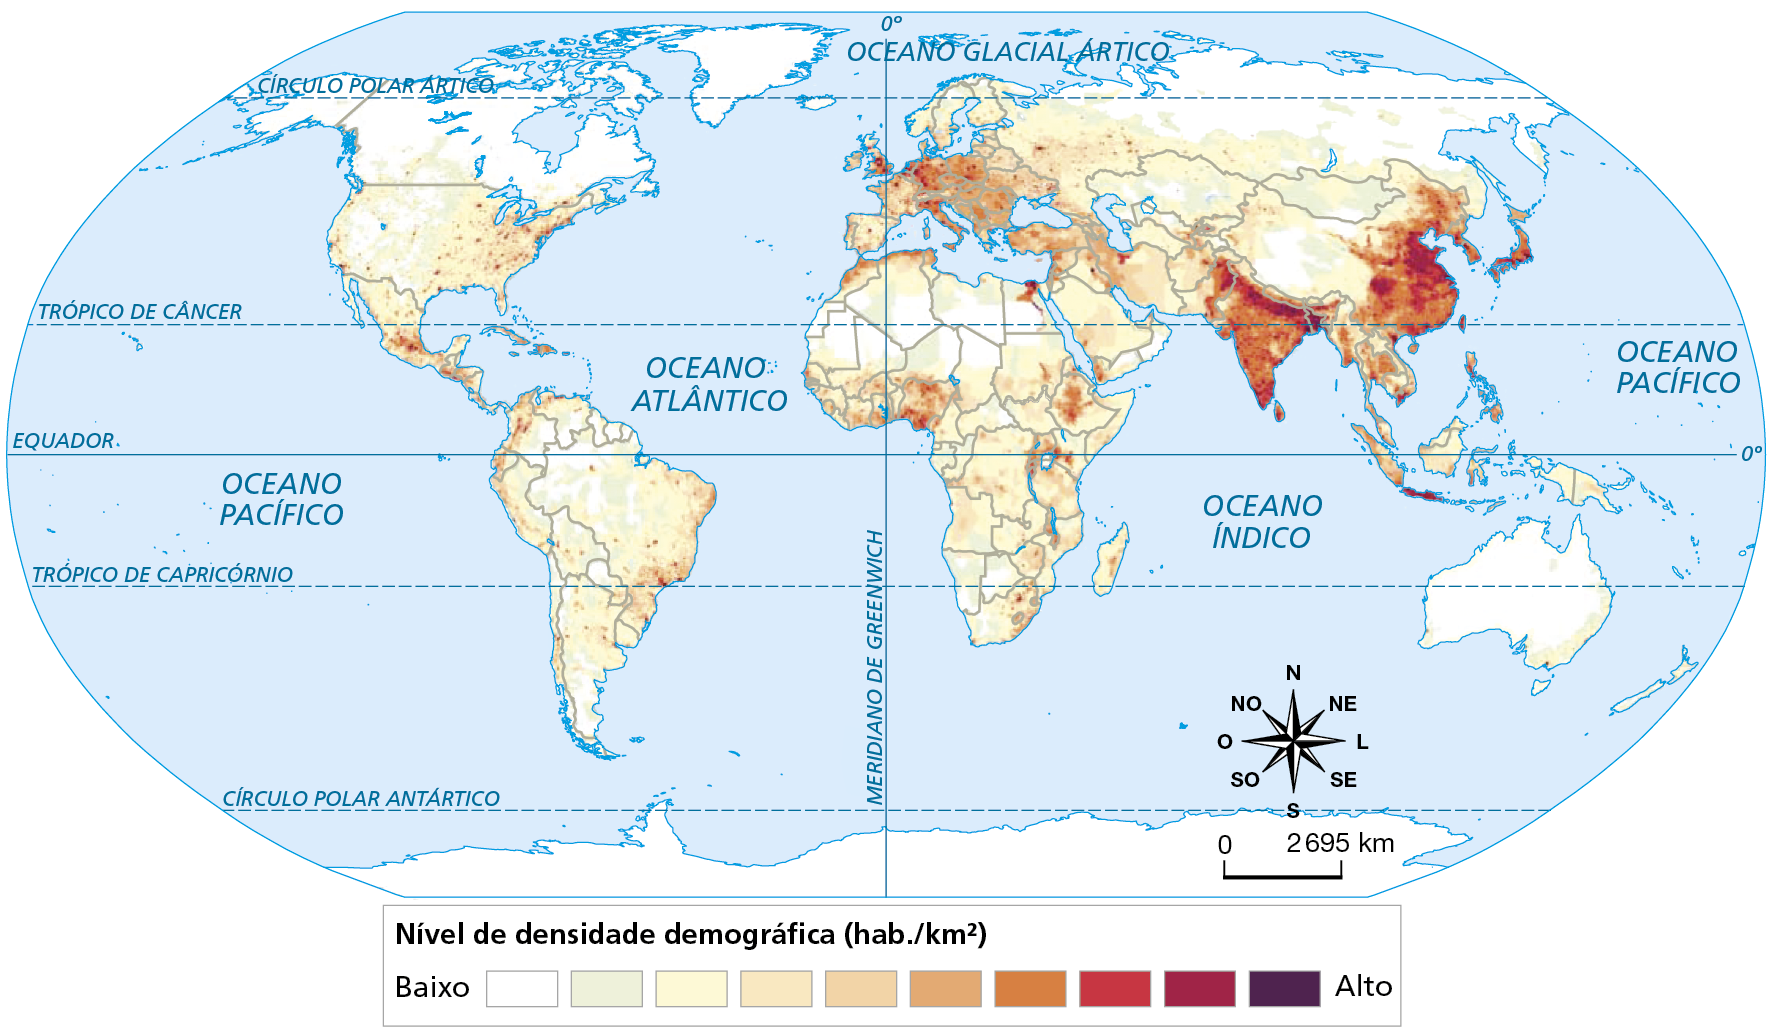 Mapa. Planisfério: densidade demográfica, 2020. Mapa do mundo representando níveis de densidade demográfica.
Nível de densidade demográfica (habitantes por quilômetro quadrado).
Baixo: Canadá, área no extremo norte do Brasil, sul da Argentina, na porção norte da África, no norte da Rússia, no oeste da China, em grande parte da Austrália.
Médio: porção leste dos Estados Unidos, interior do México, costa atlântica do Brasil, noroeste do América do Sul, porção central e extremo norte da África, porção norte do Oriente Médio, e oeste da Europa.
Alto: Índia, centro da Europa, centro e leste da China, Japão e Sudeste Asiático.
Na parte inferior, rosa dos ventos e escala de 0 a 2.695 quilômetros.